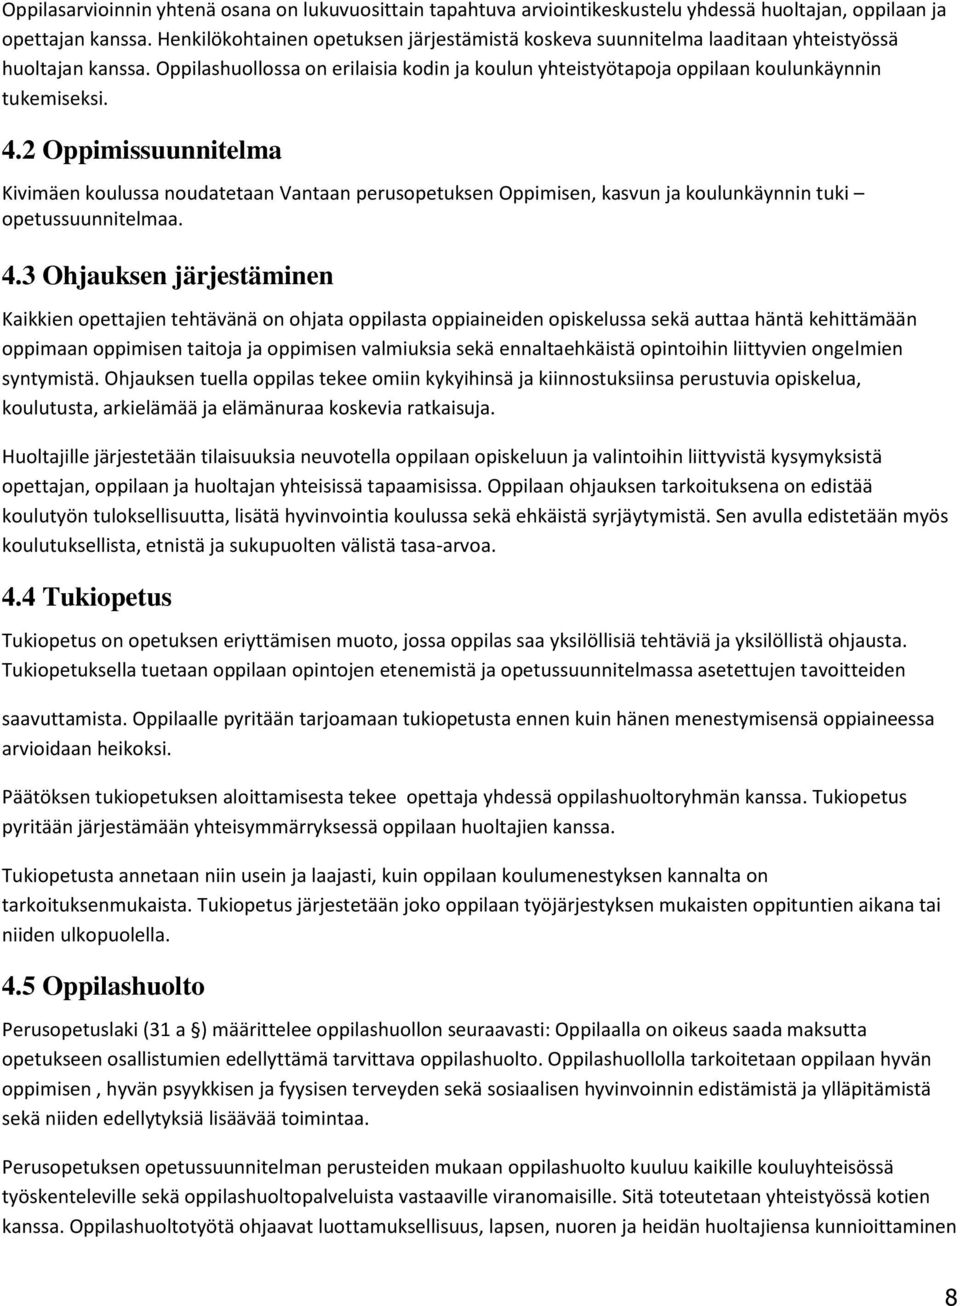 2 Oppimissuunnitelma Kivimäen koulussa noudatetaan Vantaan perusopetuksen Oppimisen, kasvun ja koulunkäynnin tuki opetussuunnitelmaa. 4.